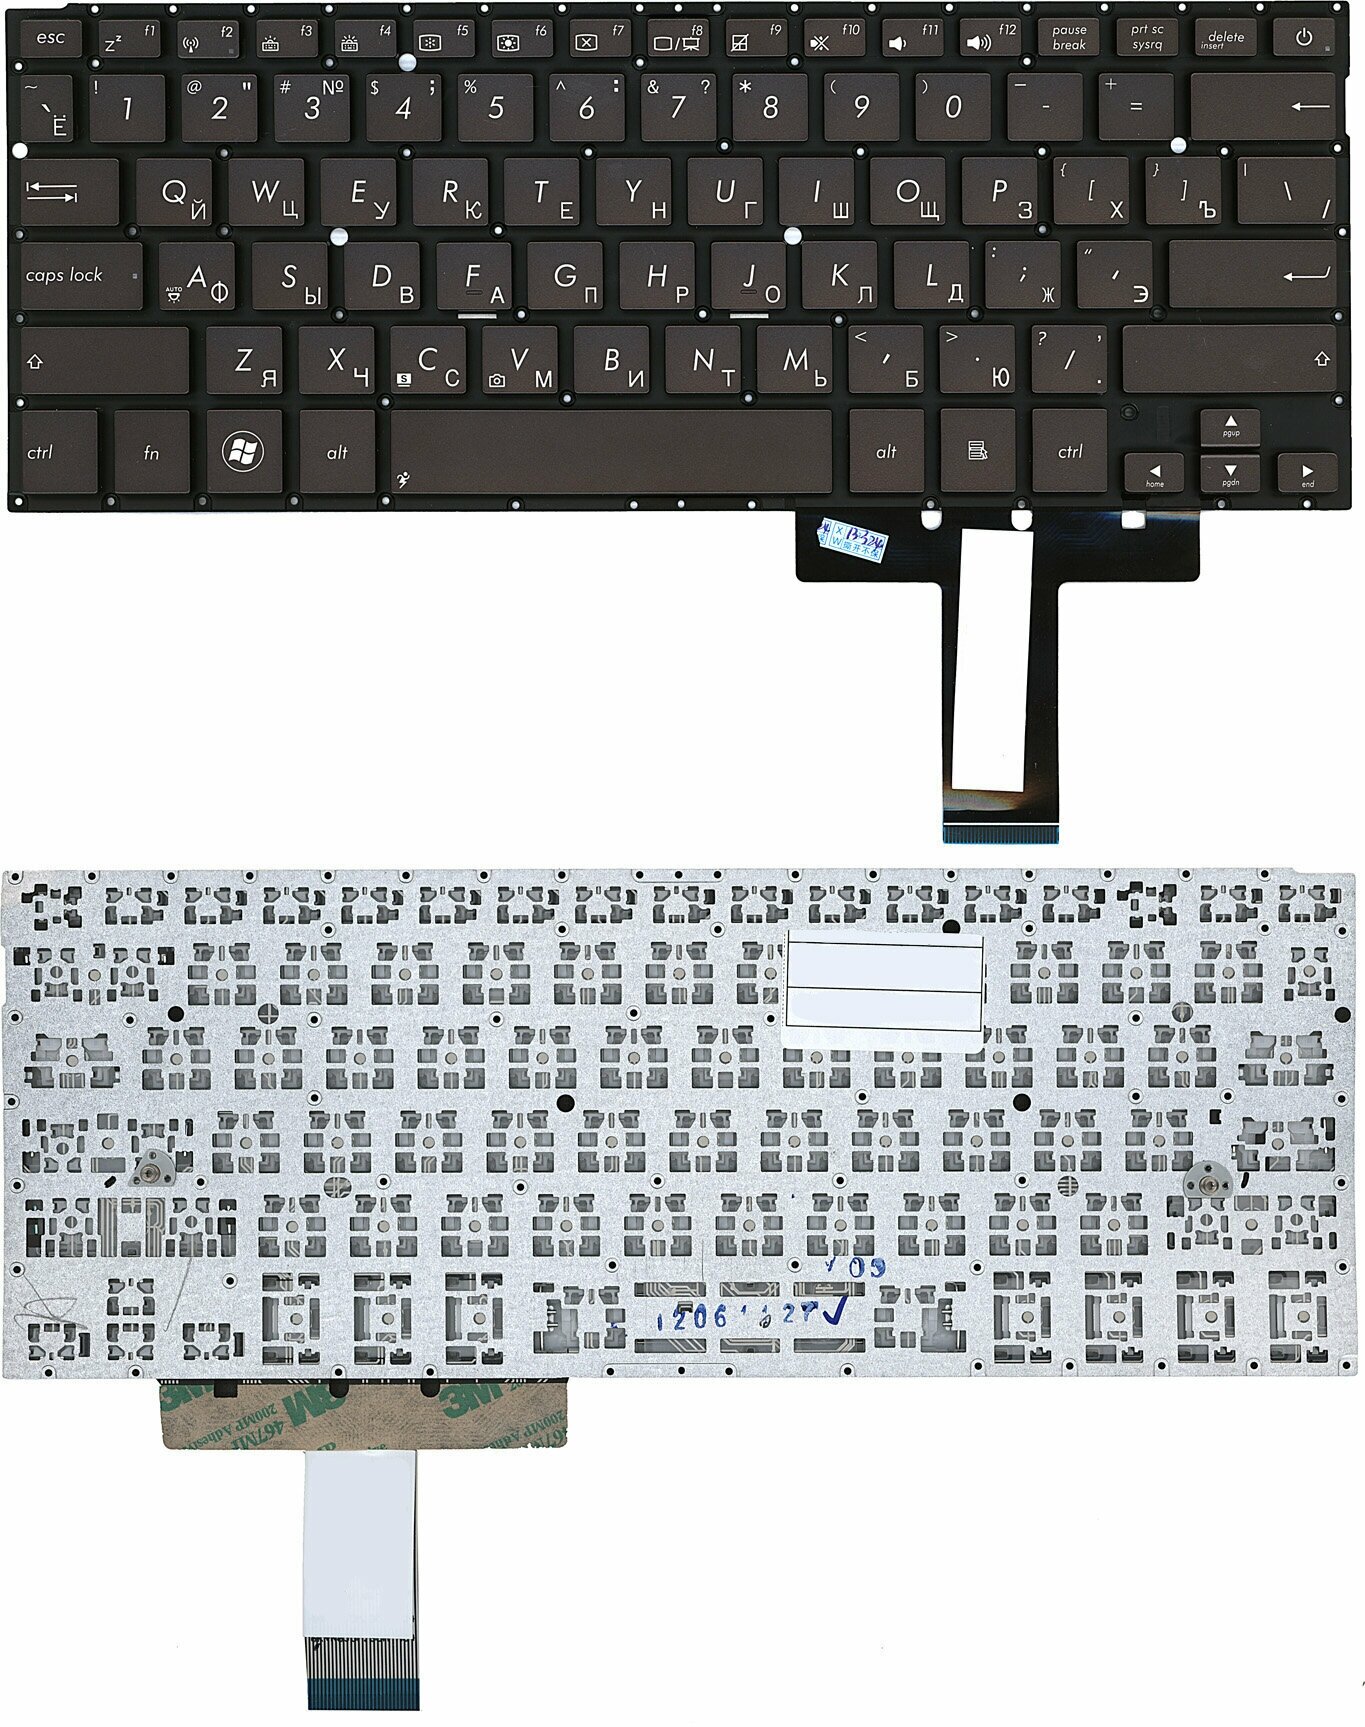 Клавиатура для ноутбука Asus UX31 UX31A UX32 UX32A черная с подсветкой